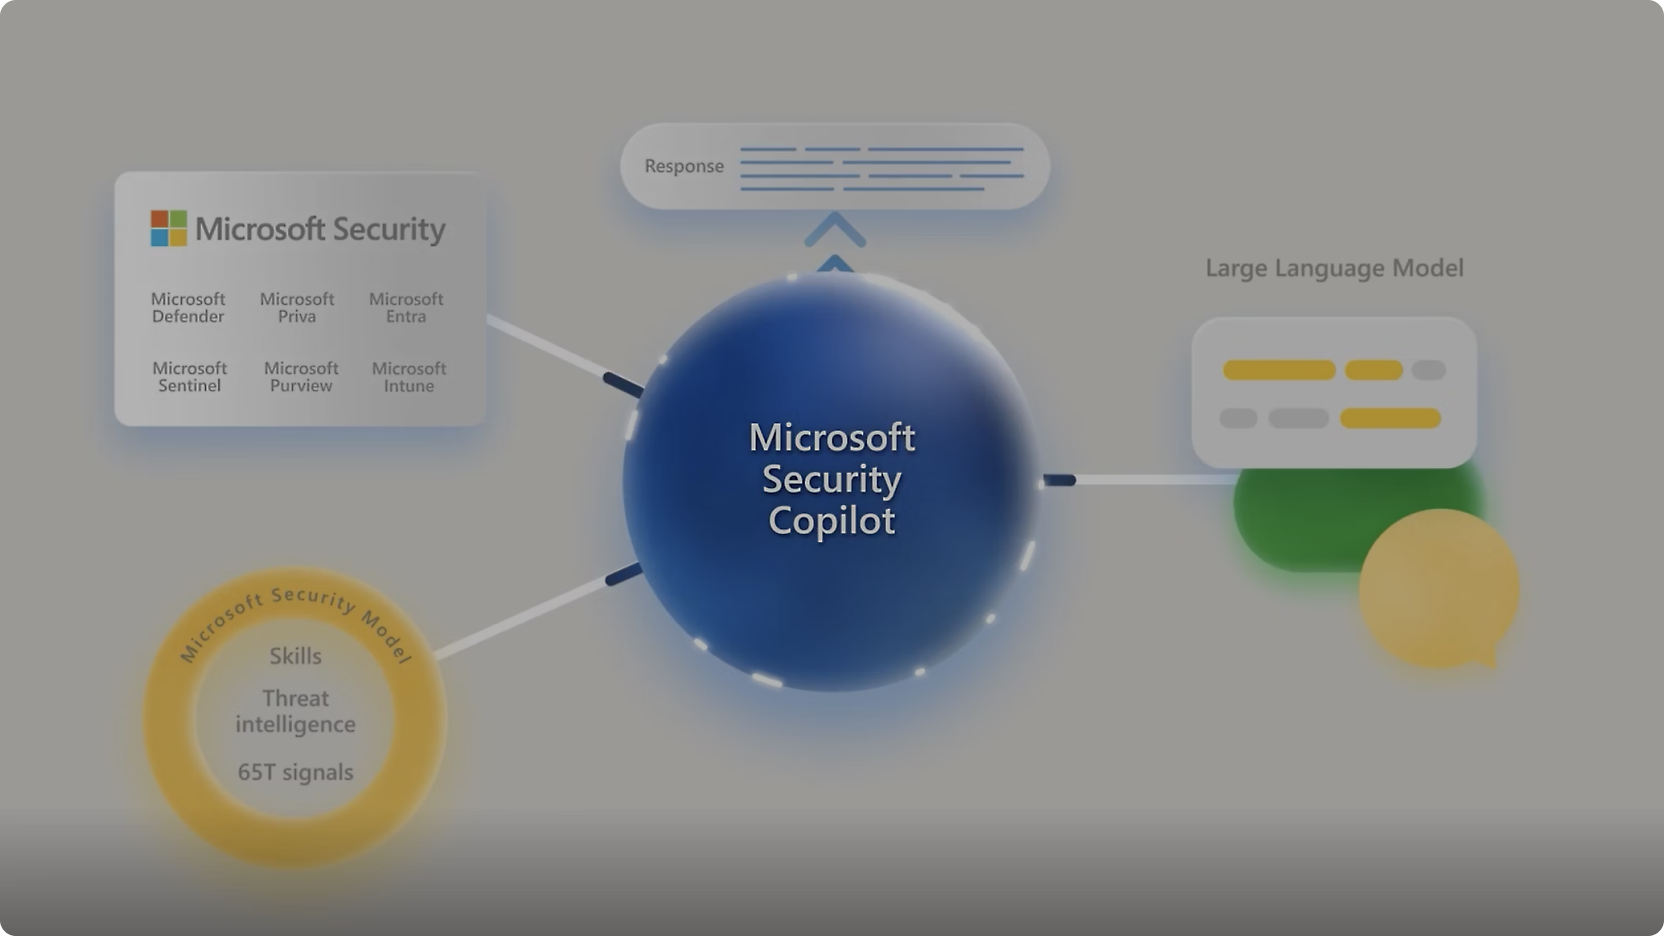 Diagrama mostrando "Microsoft Copilot para Segurança" no centro com conexões com várias ferramentas de segurança da Microsoft